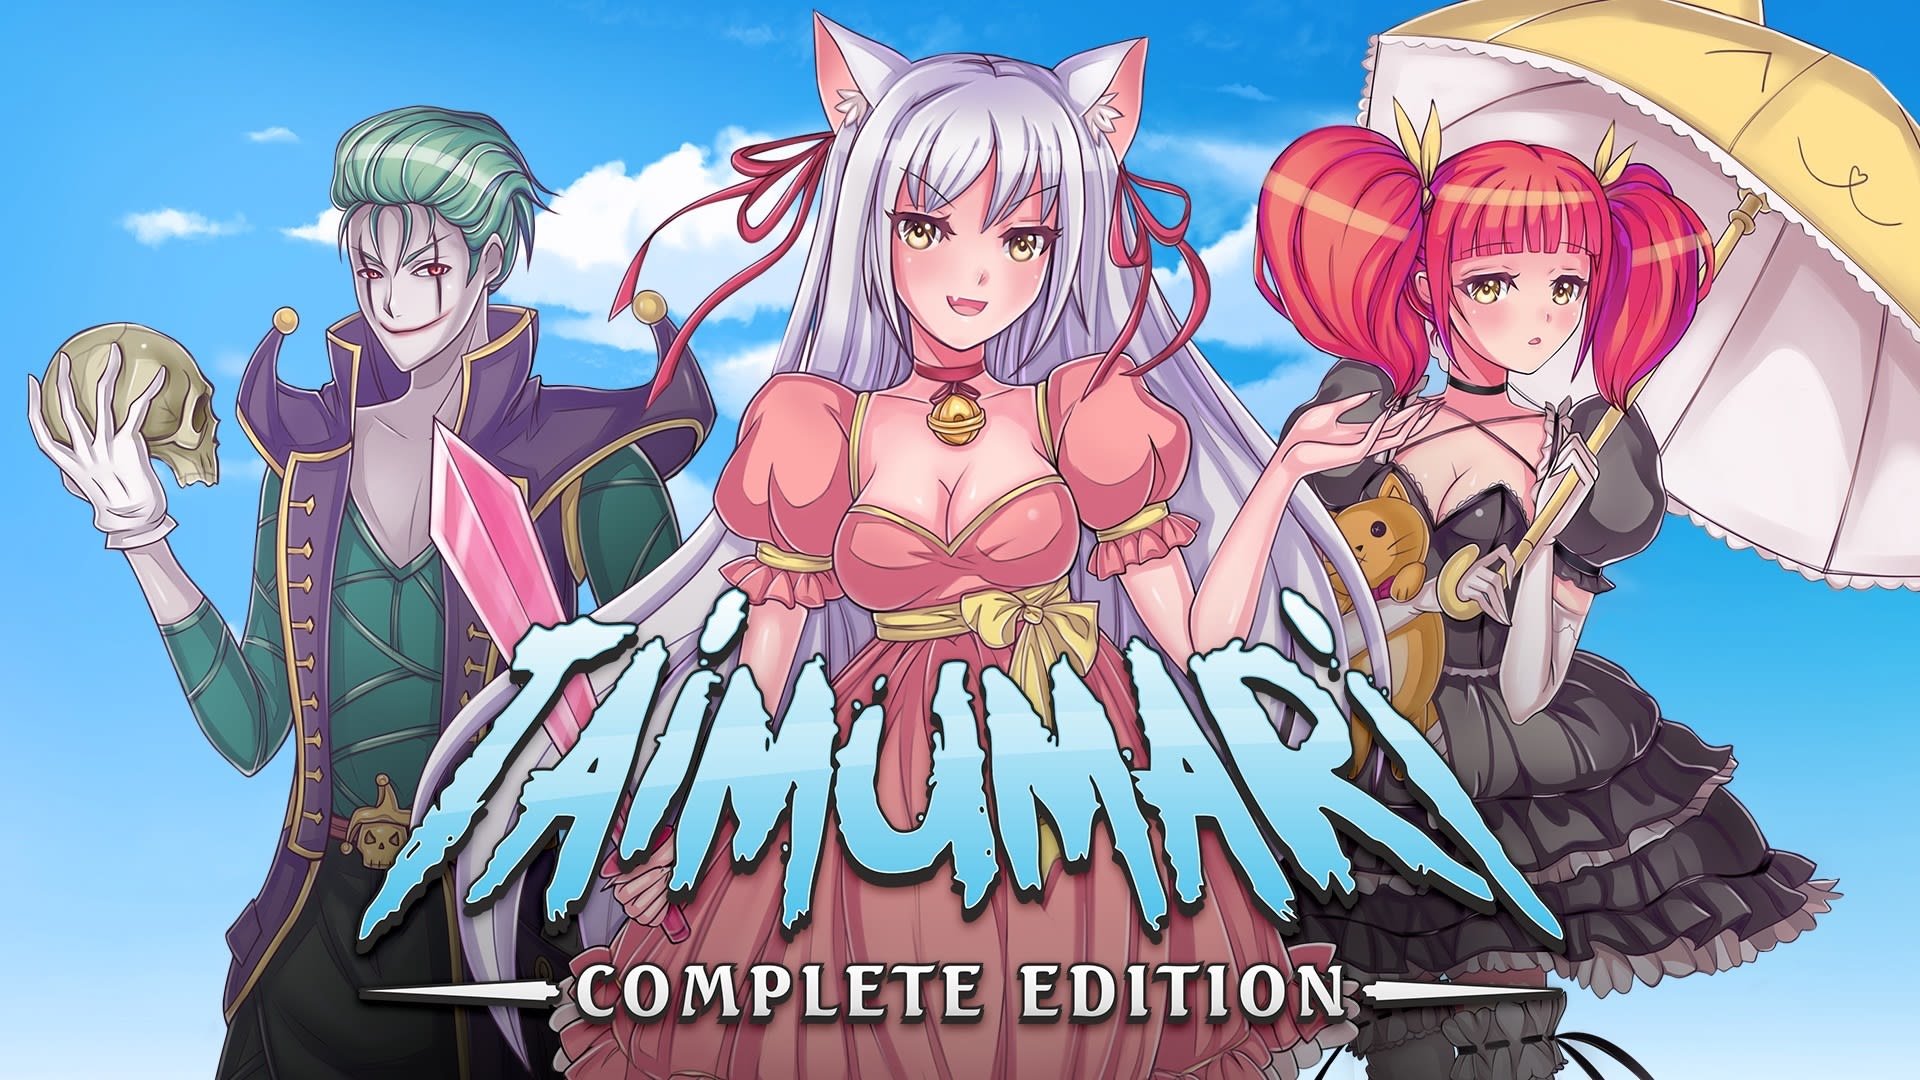 Taimumari: Complete Edition